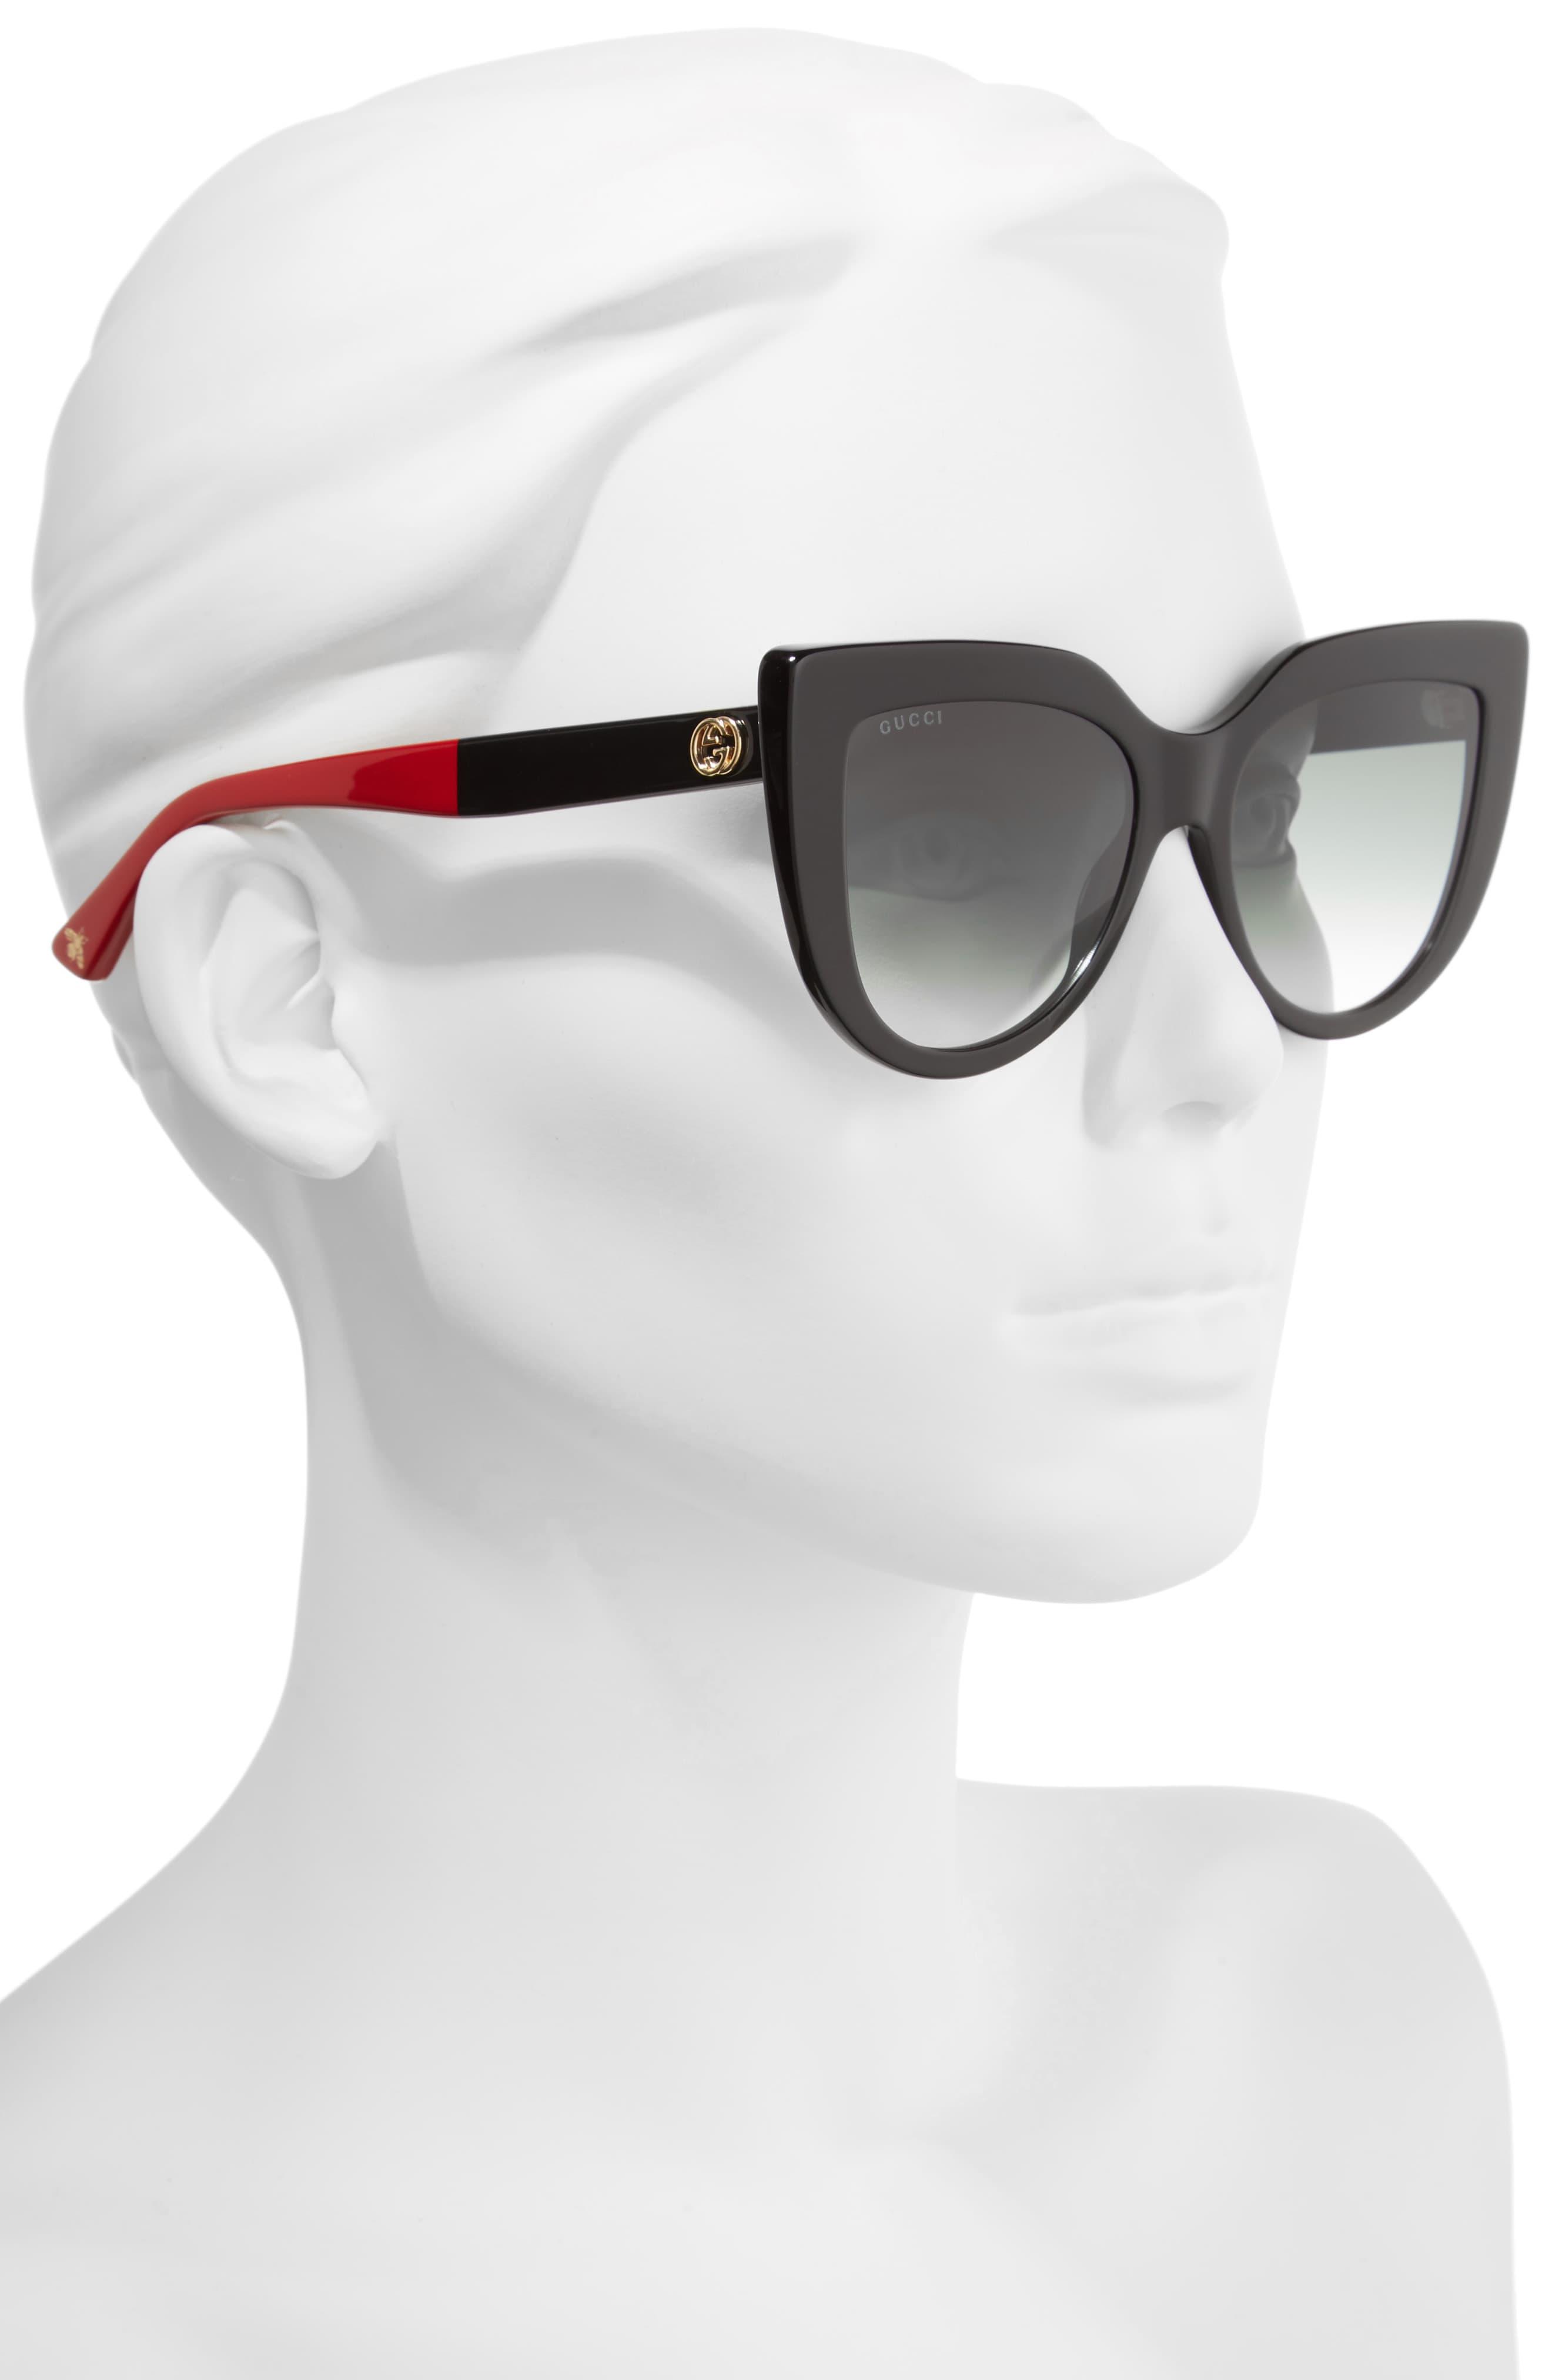 53mm cat eye sunglasses gucci